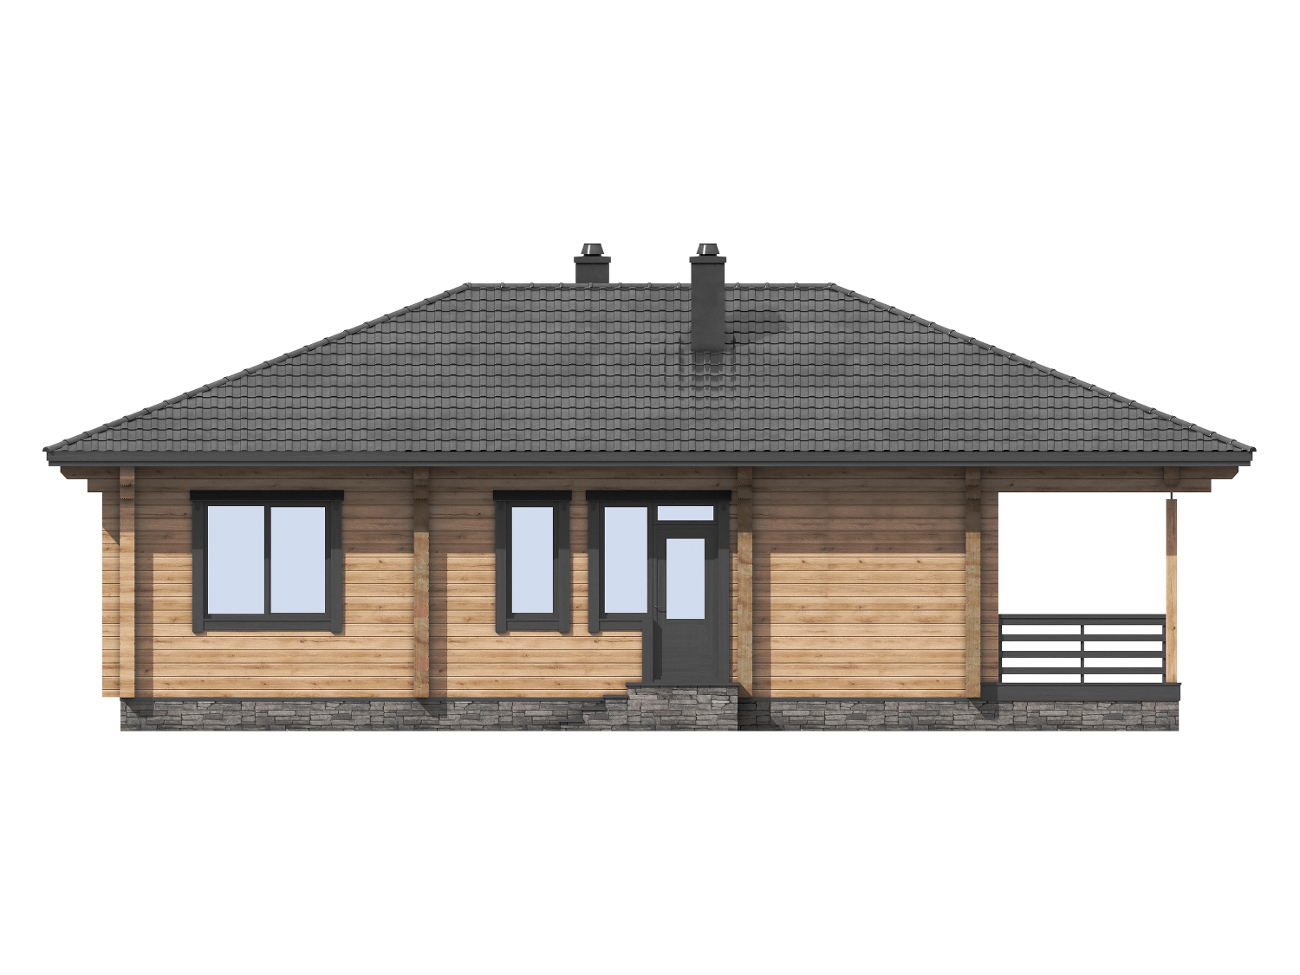 1-47b Проект одноэтажного деревянного дома для отдыха